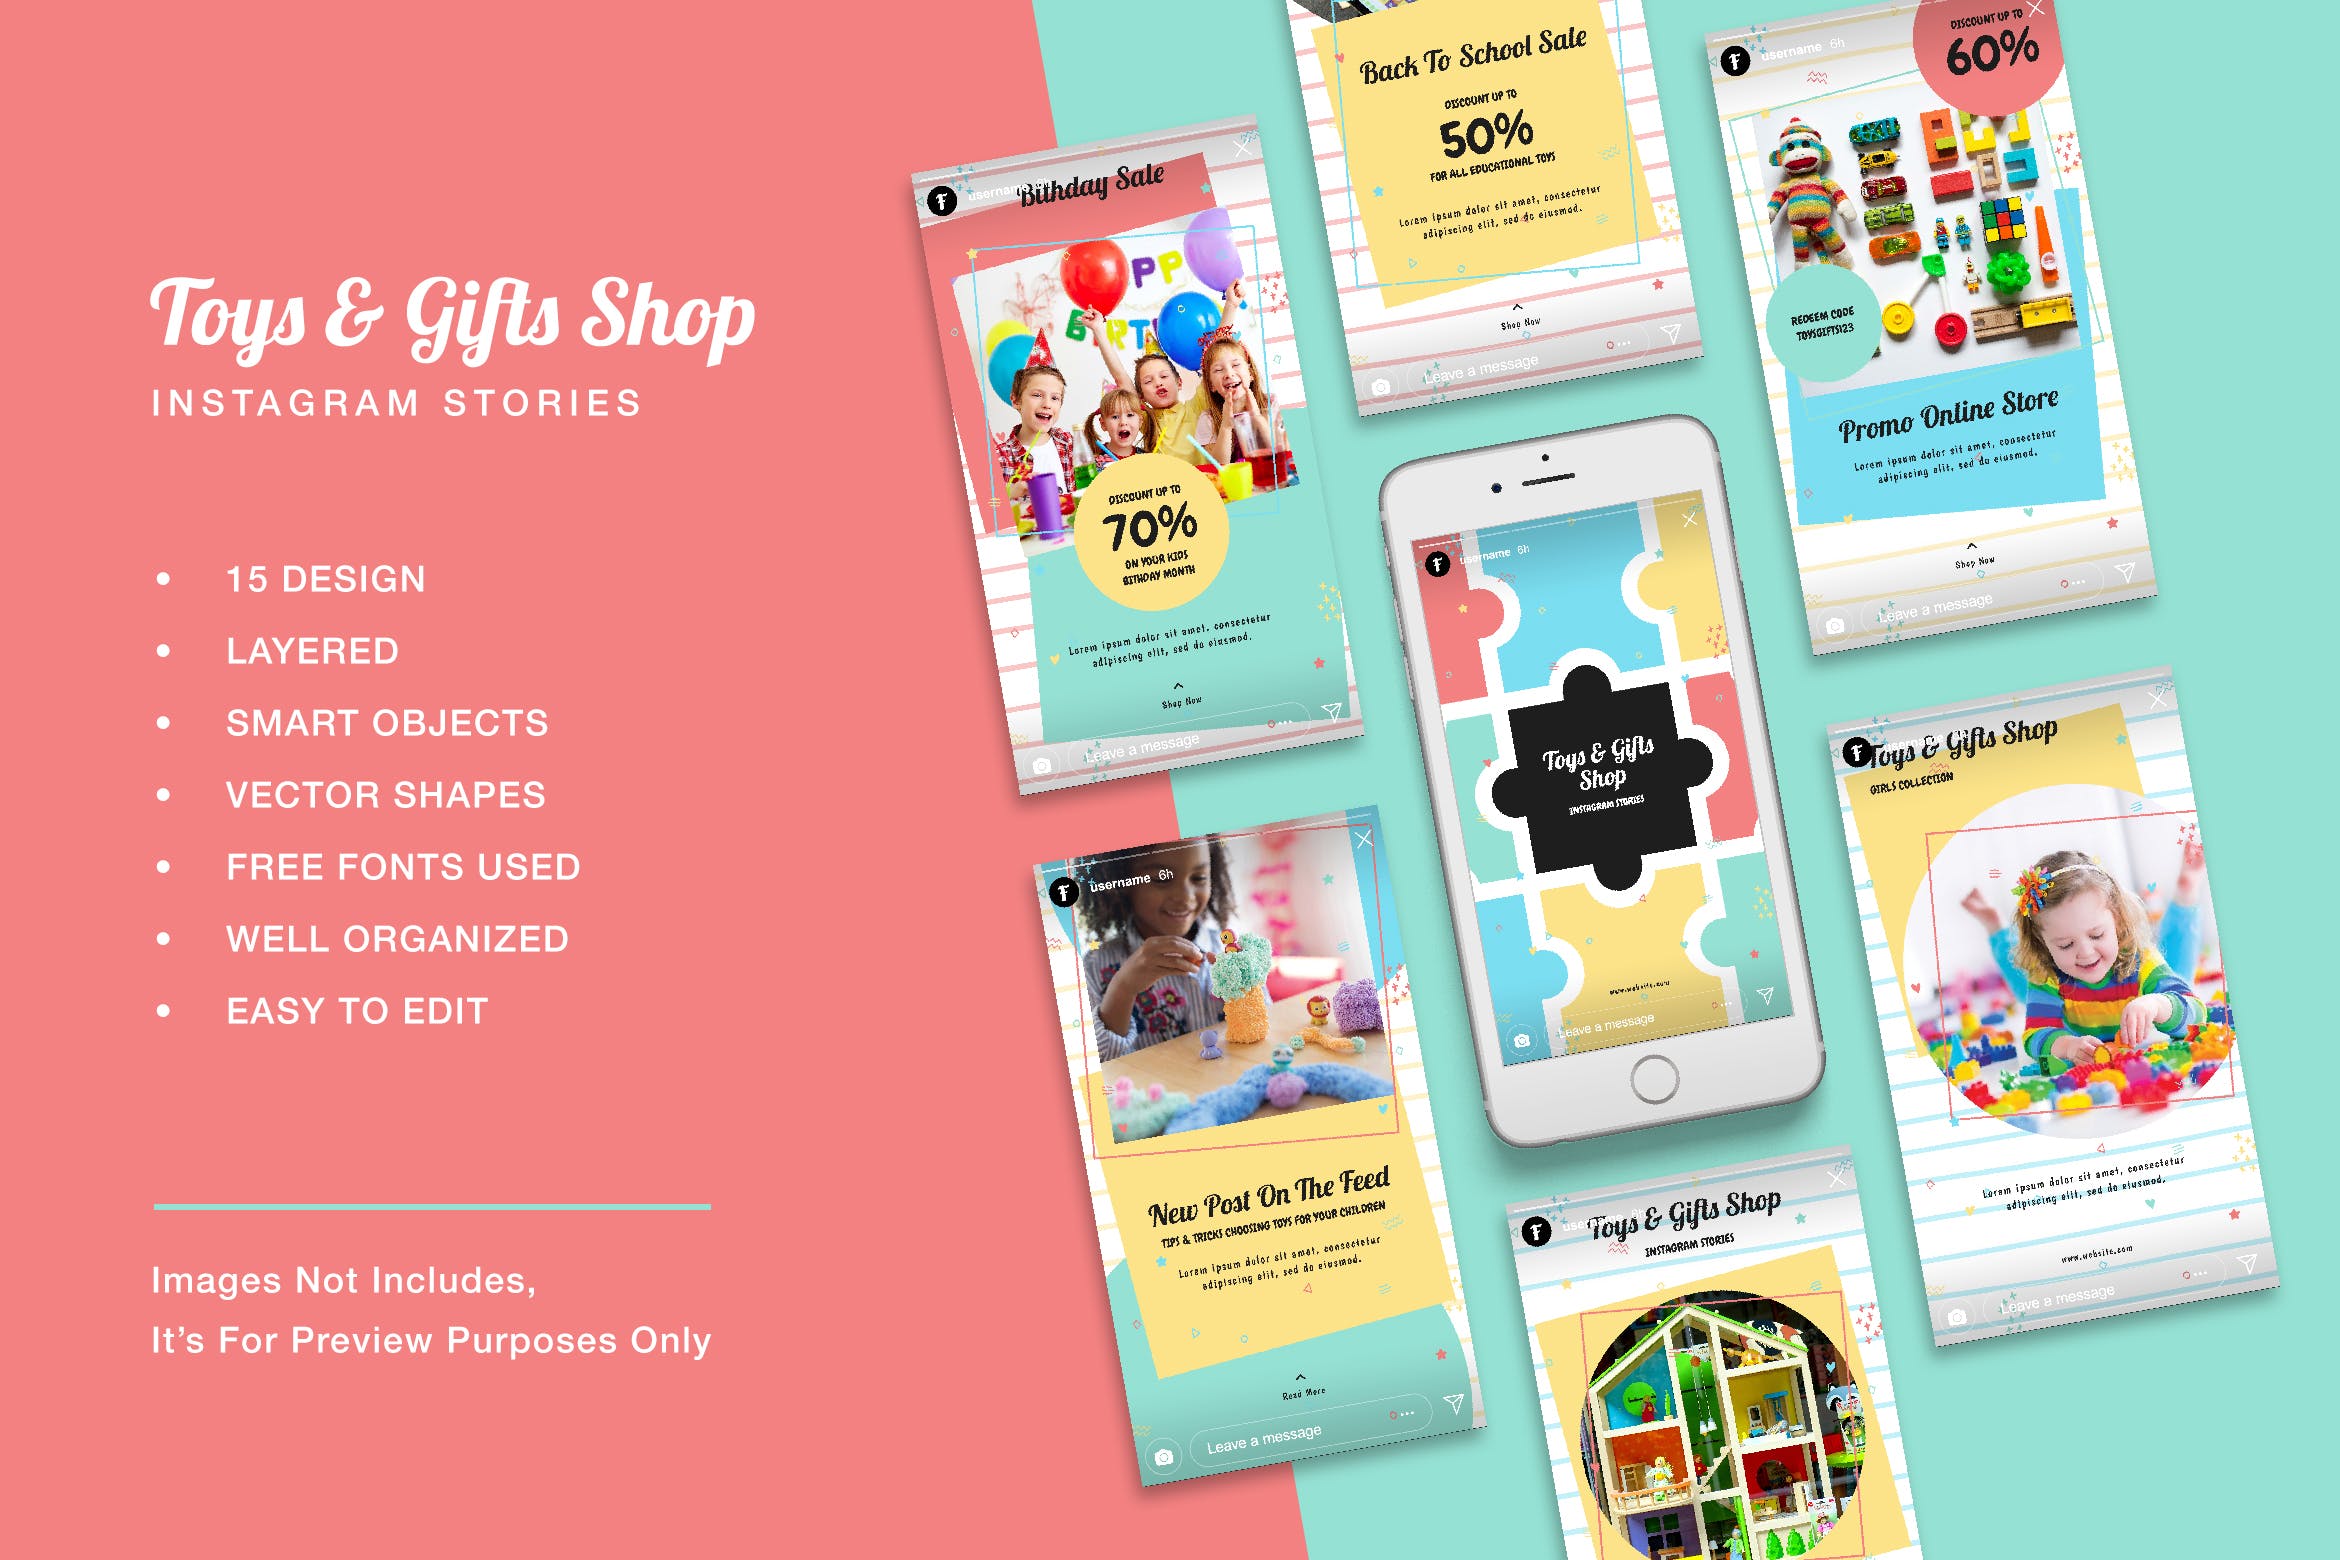 玩具及礼品店Instagram品牌故事设计模板第一素材精选 Toys & Gift Shop Instagram Stories插图